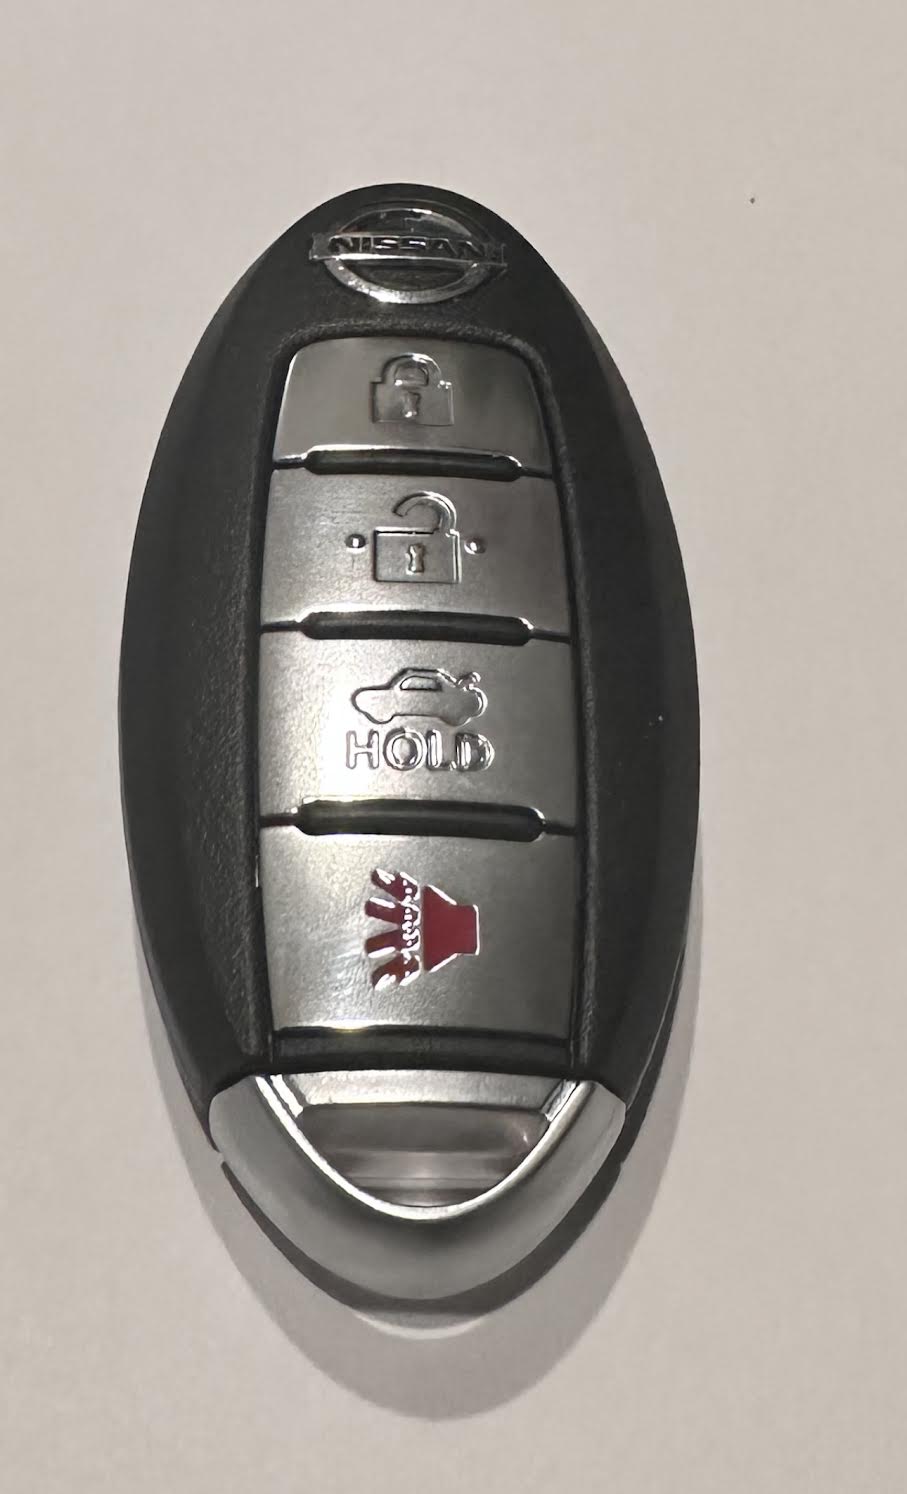 Nissan Sentra 2013 / 4-Button Smart Key / FCC ID: CWTWB1U815 / SKU: RSK-NIS040